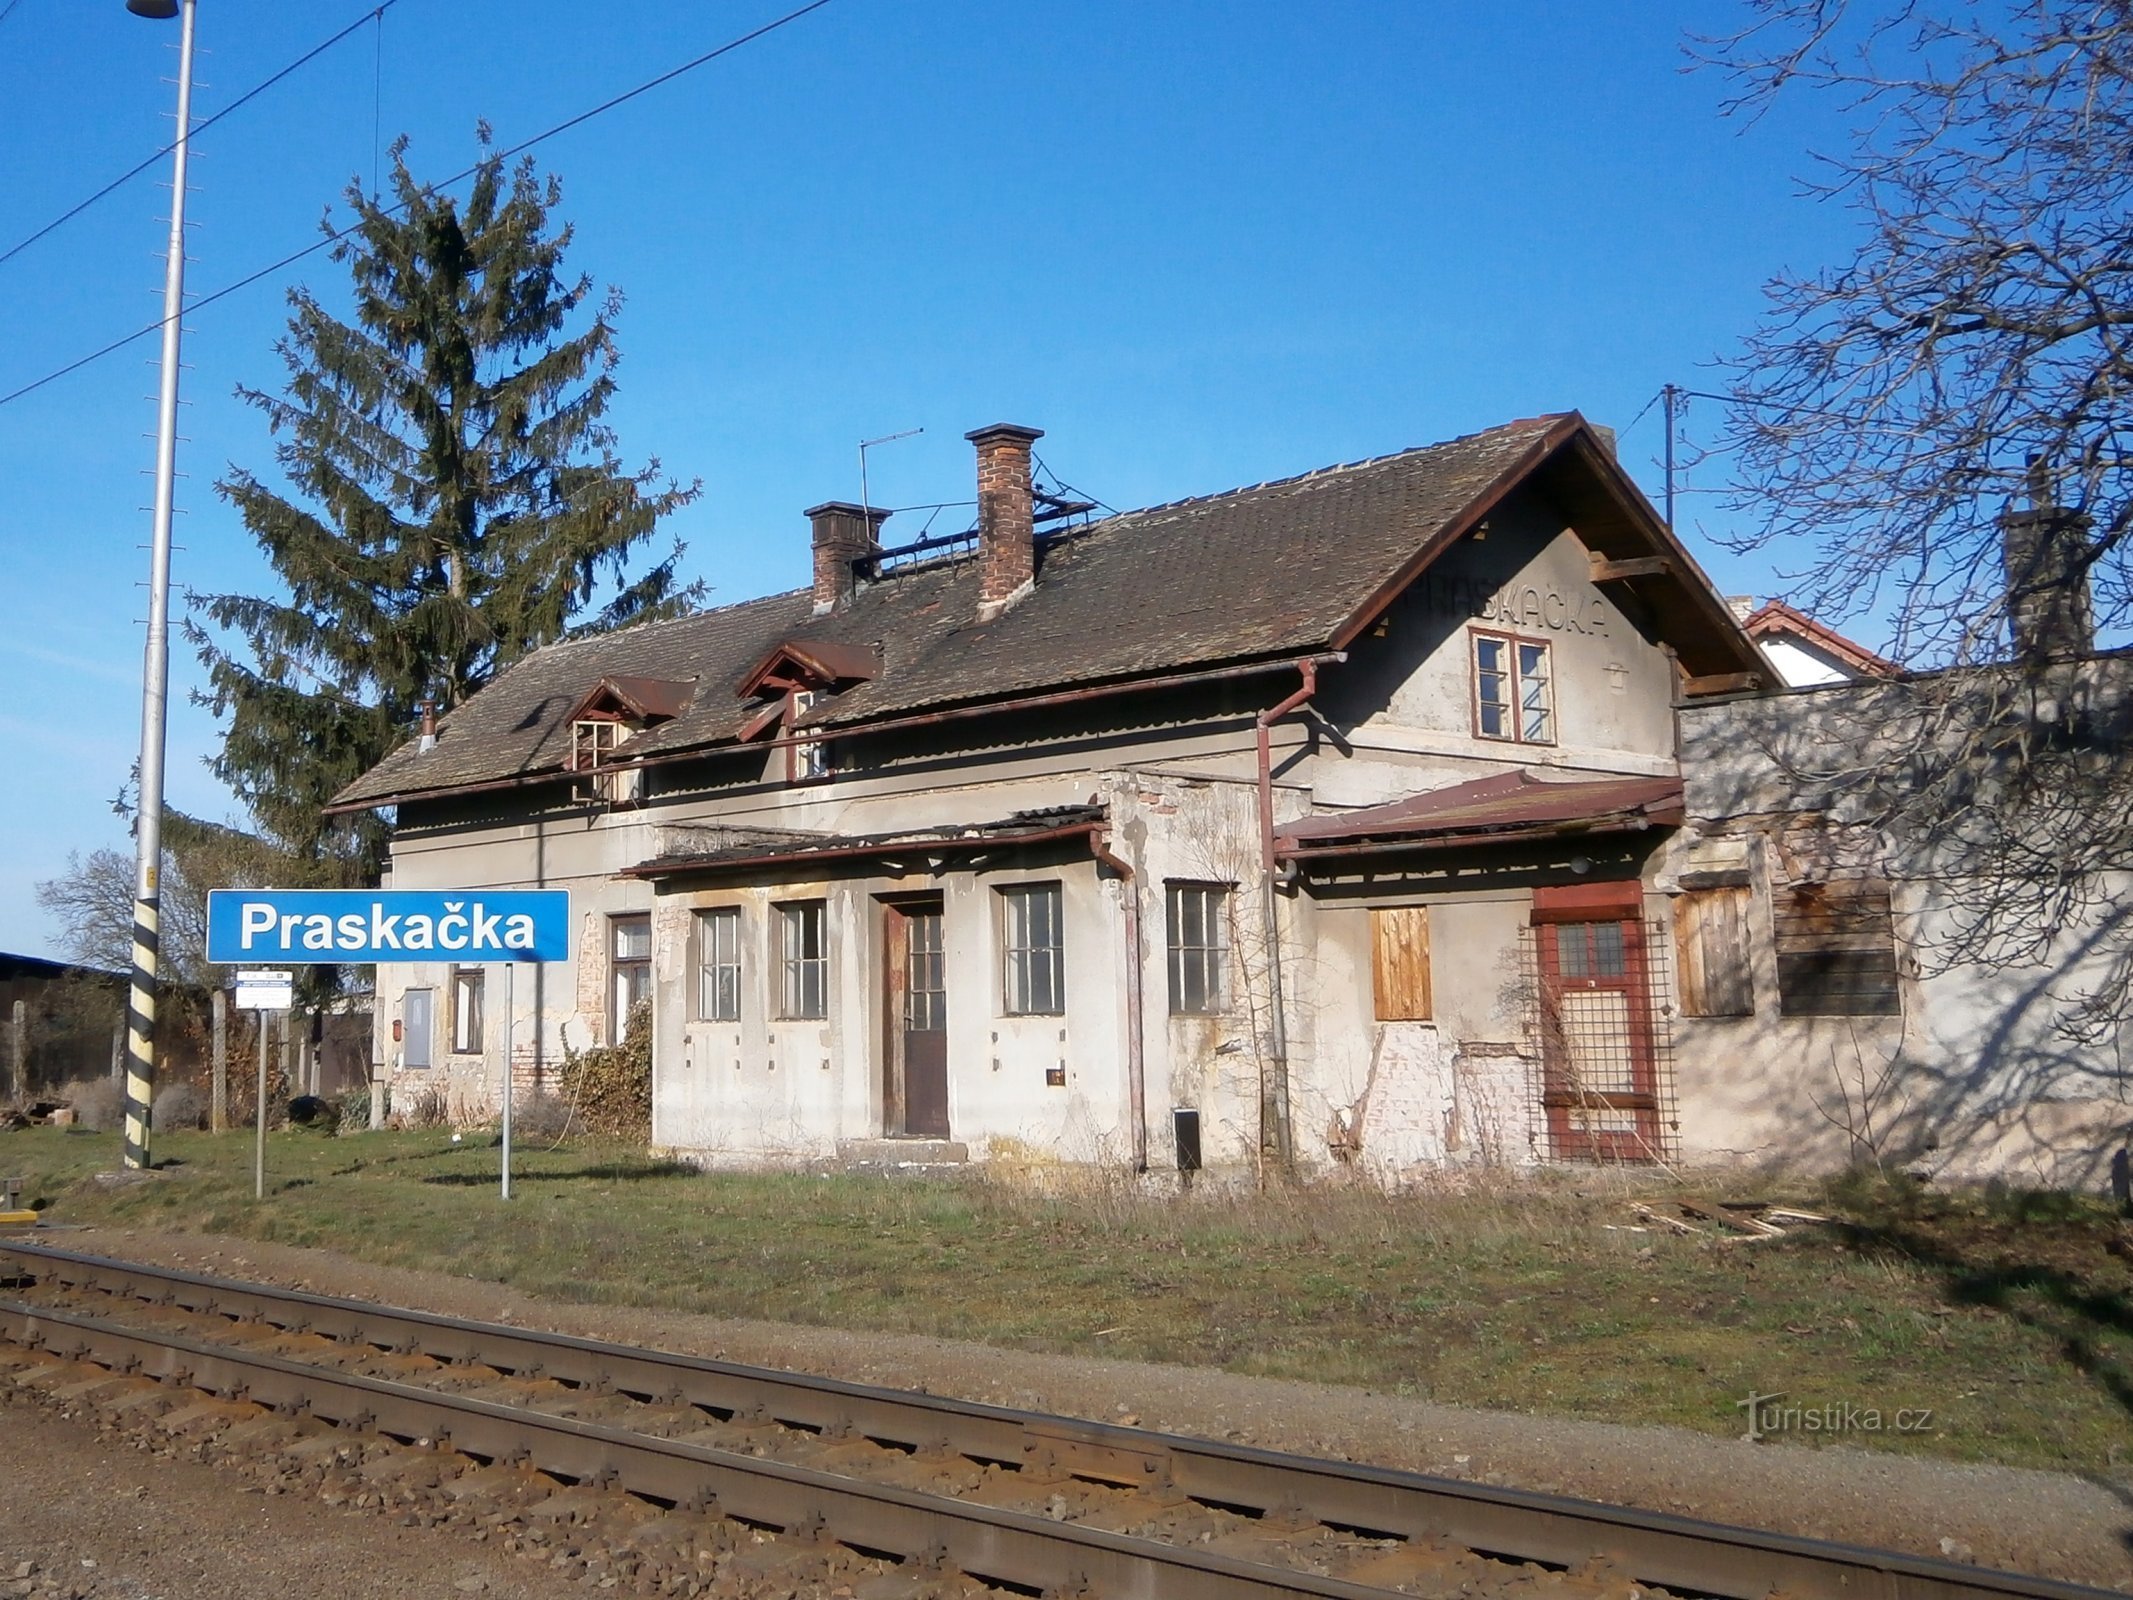 La vecchia stazione ferroviaria di Praskačka